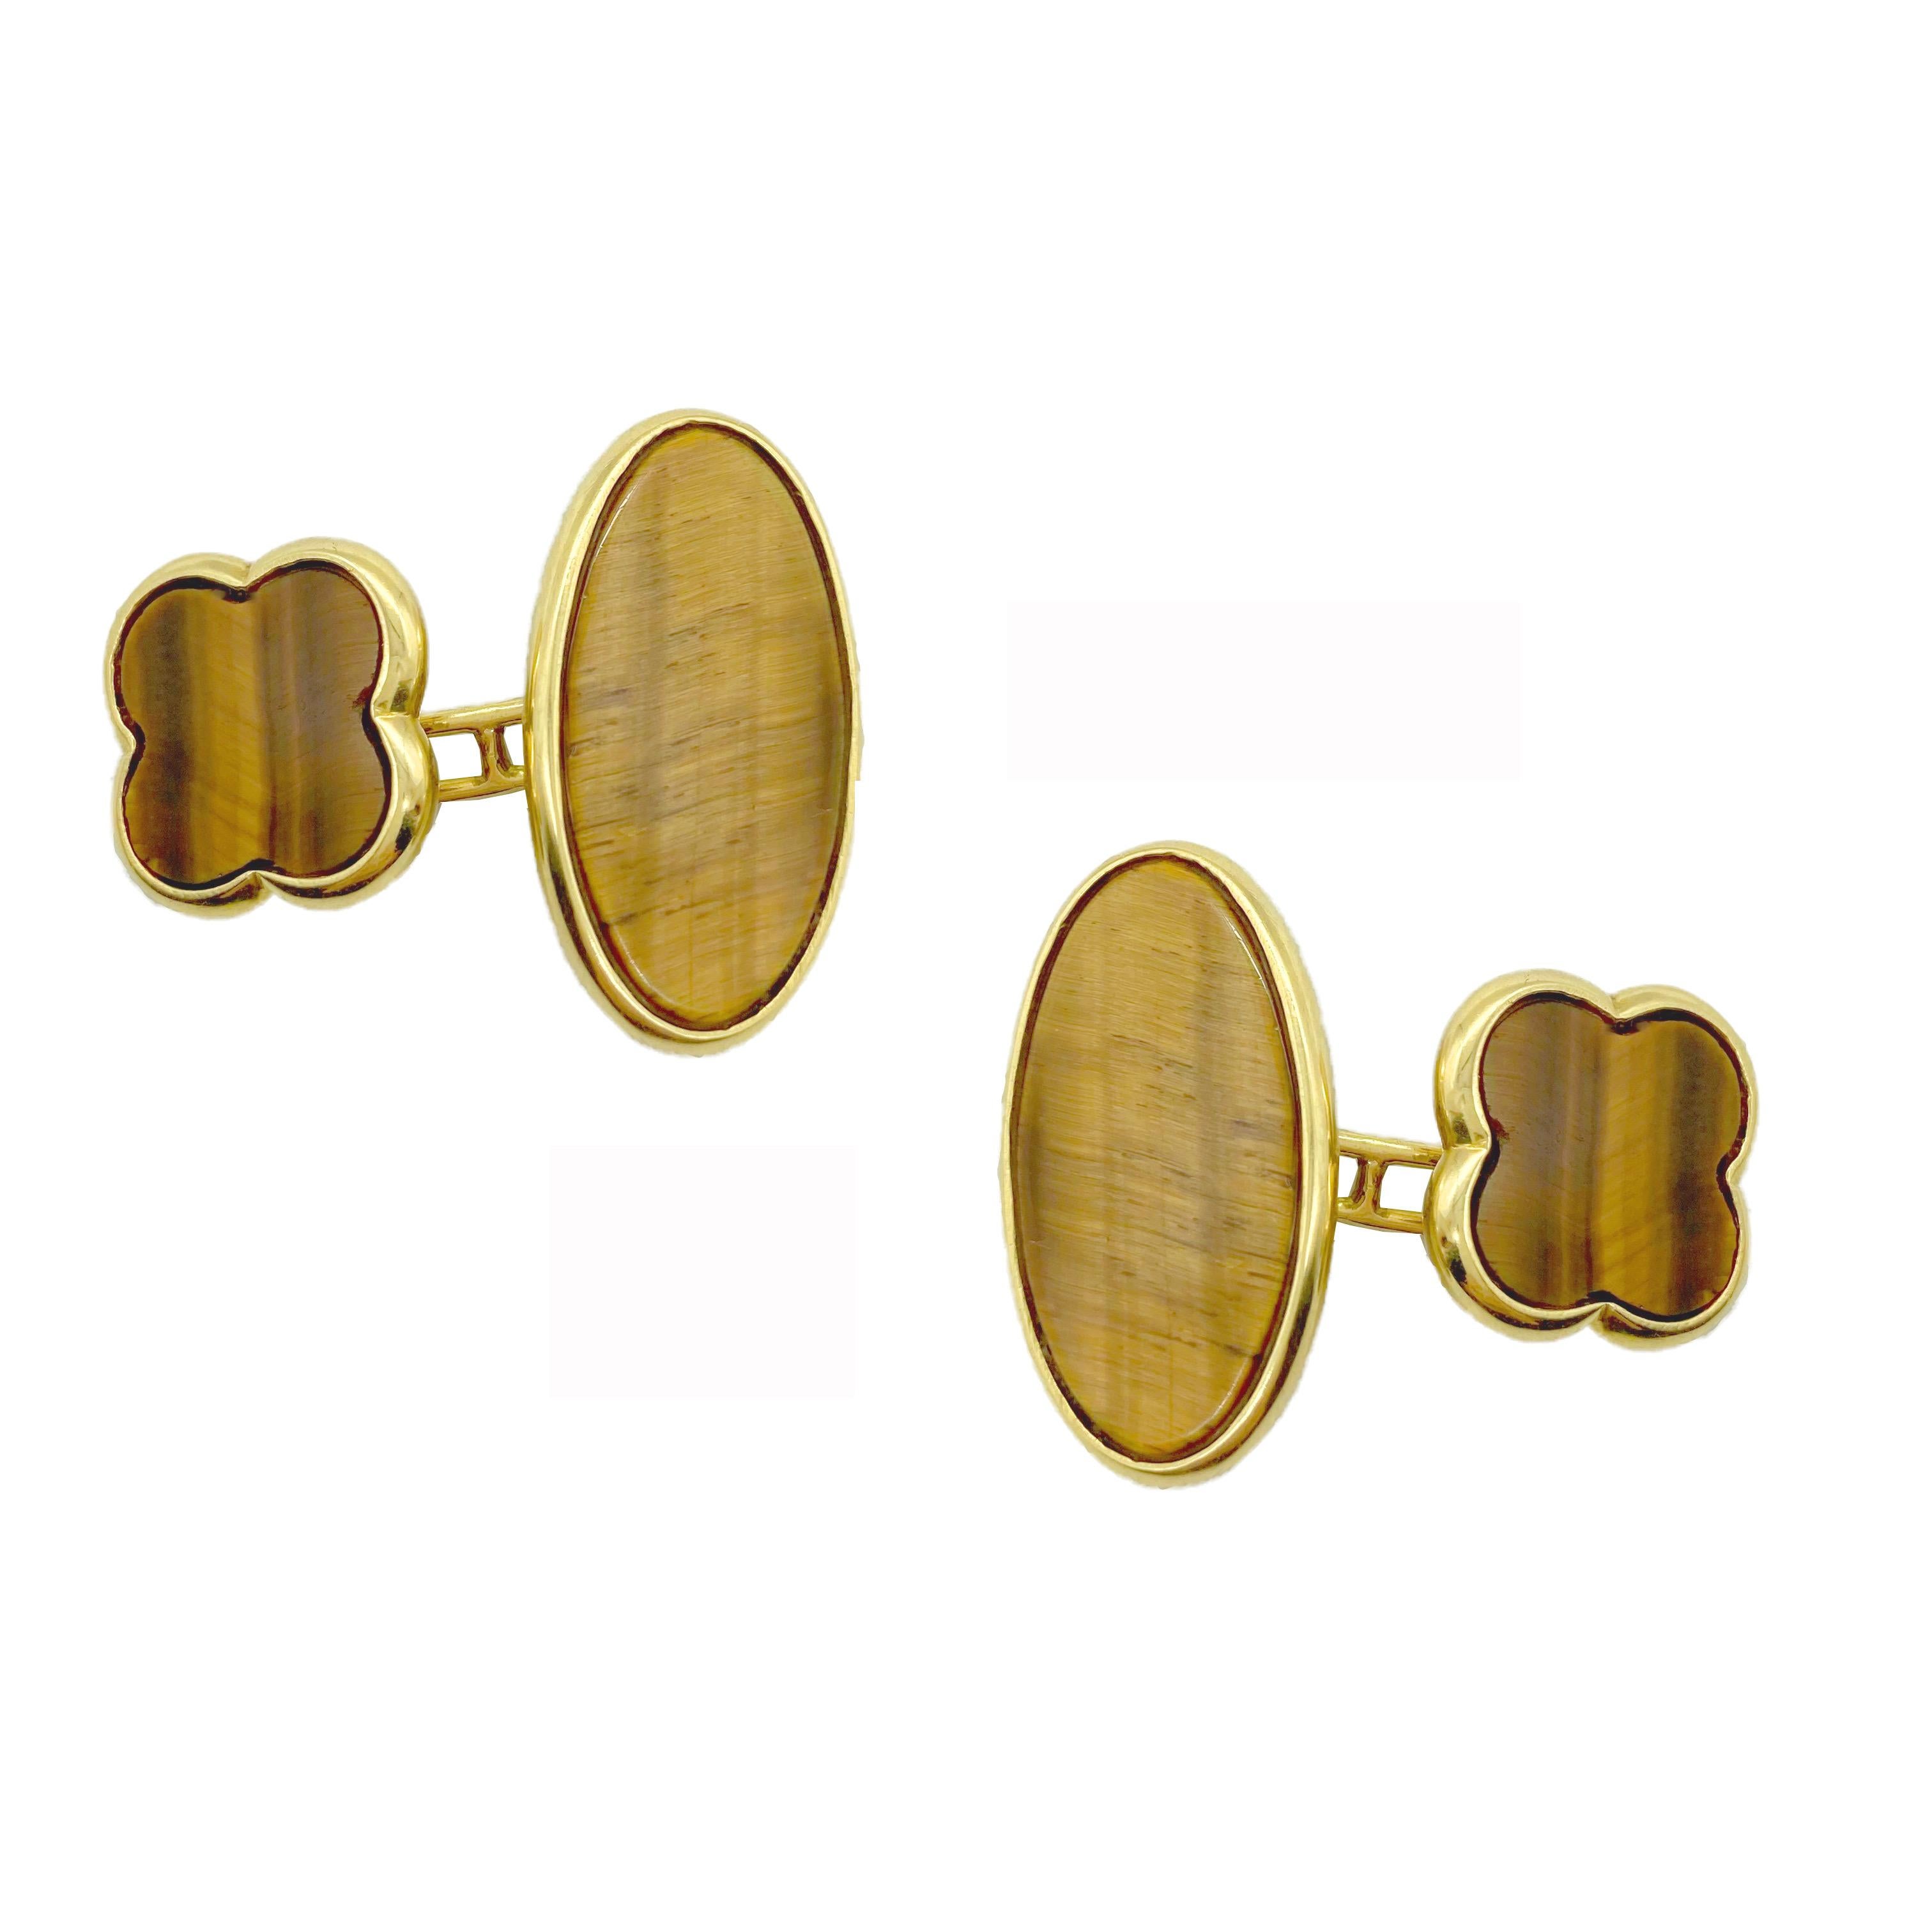 An elegant pair of Van Cleef & Arpels Alhambra tiger’s eye cufflinks.